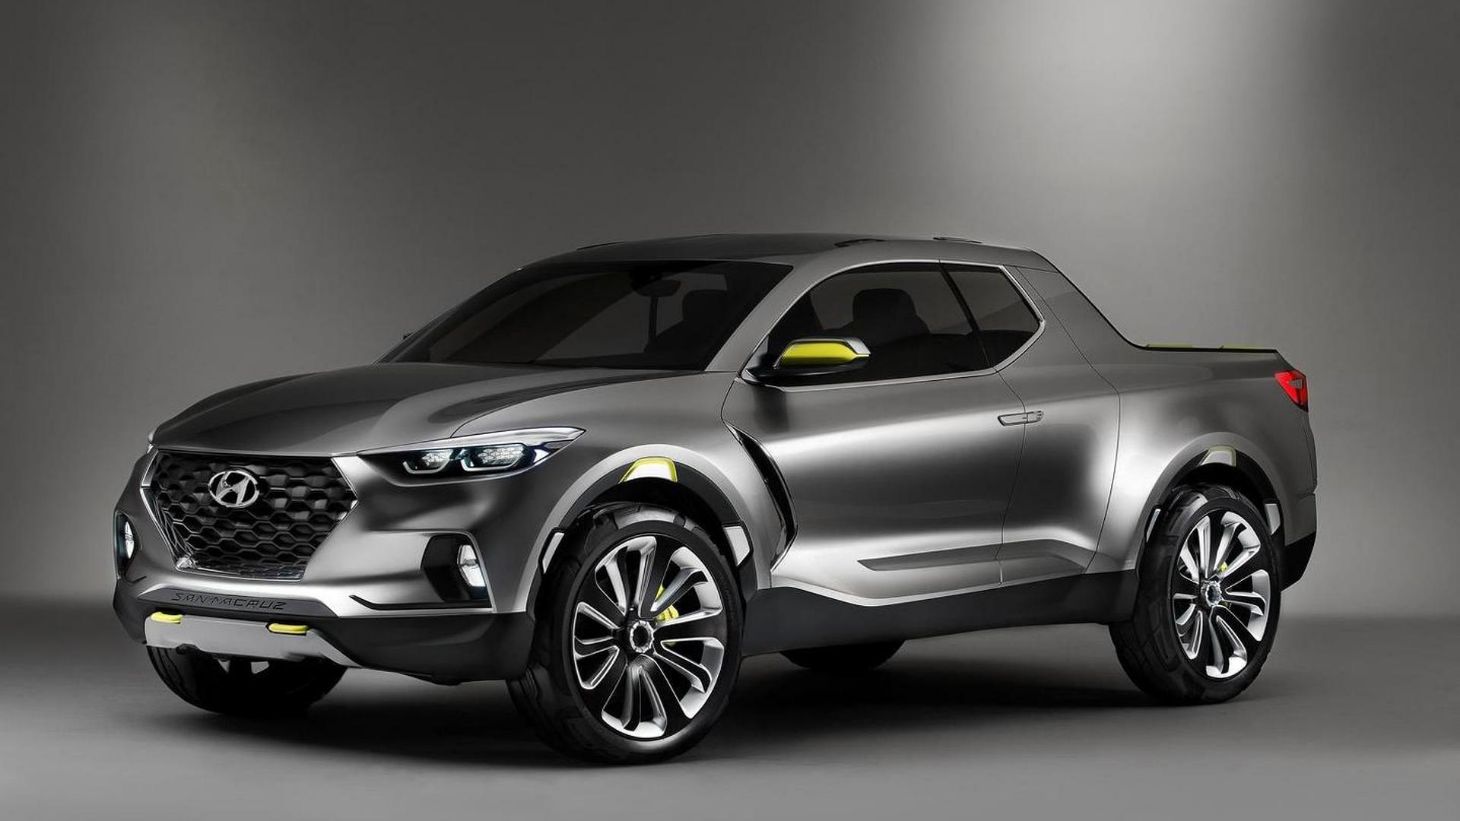 Picape da Hyundai é confirmada para 2020 pelo vice-presidente de planejamento de produtos da marca. Produção será realizada nos Estados Unidos.